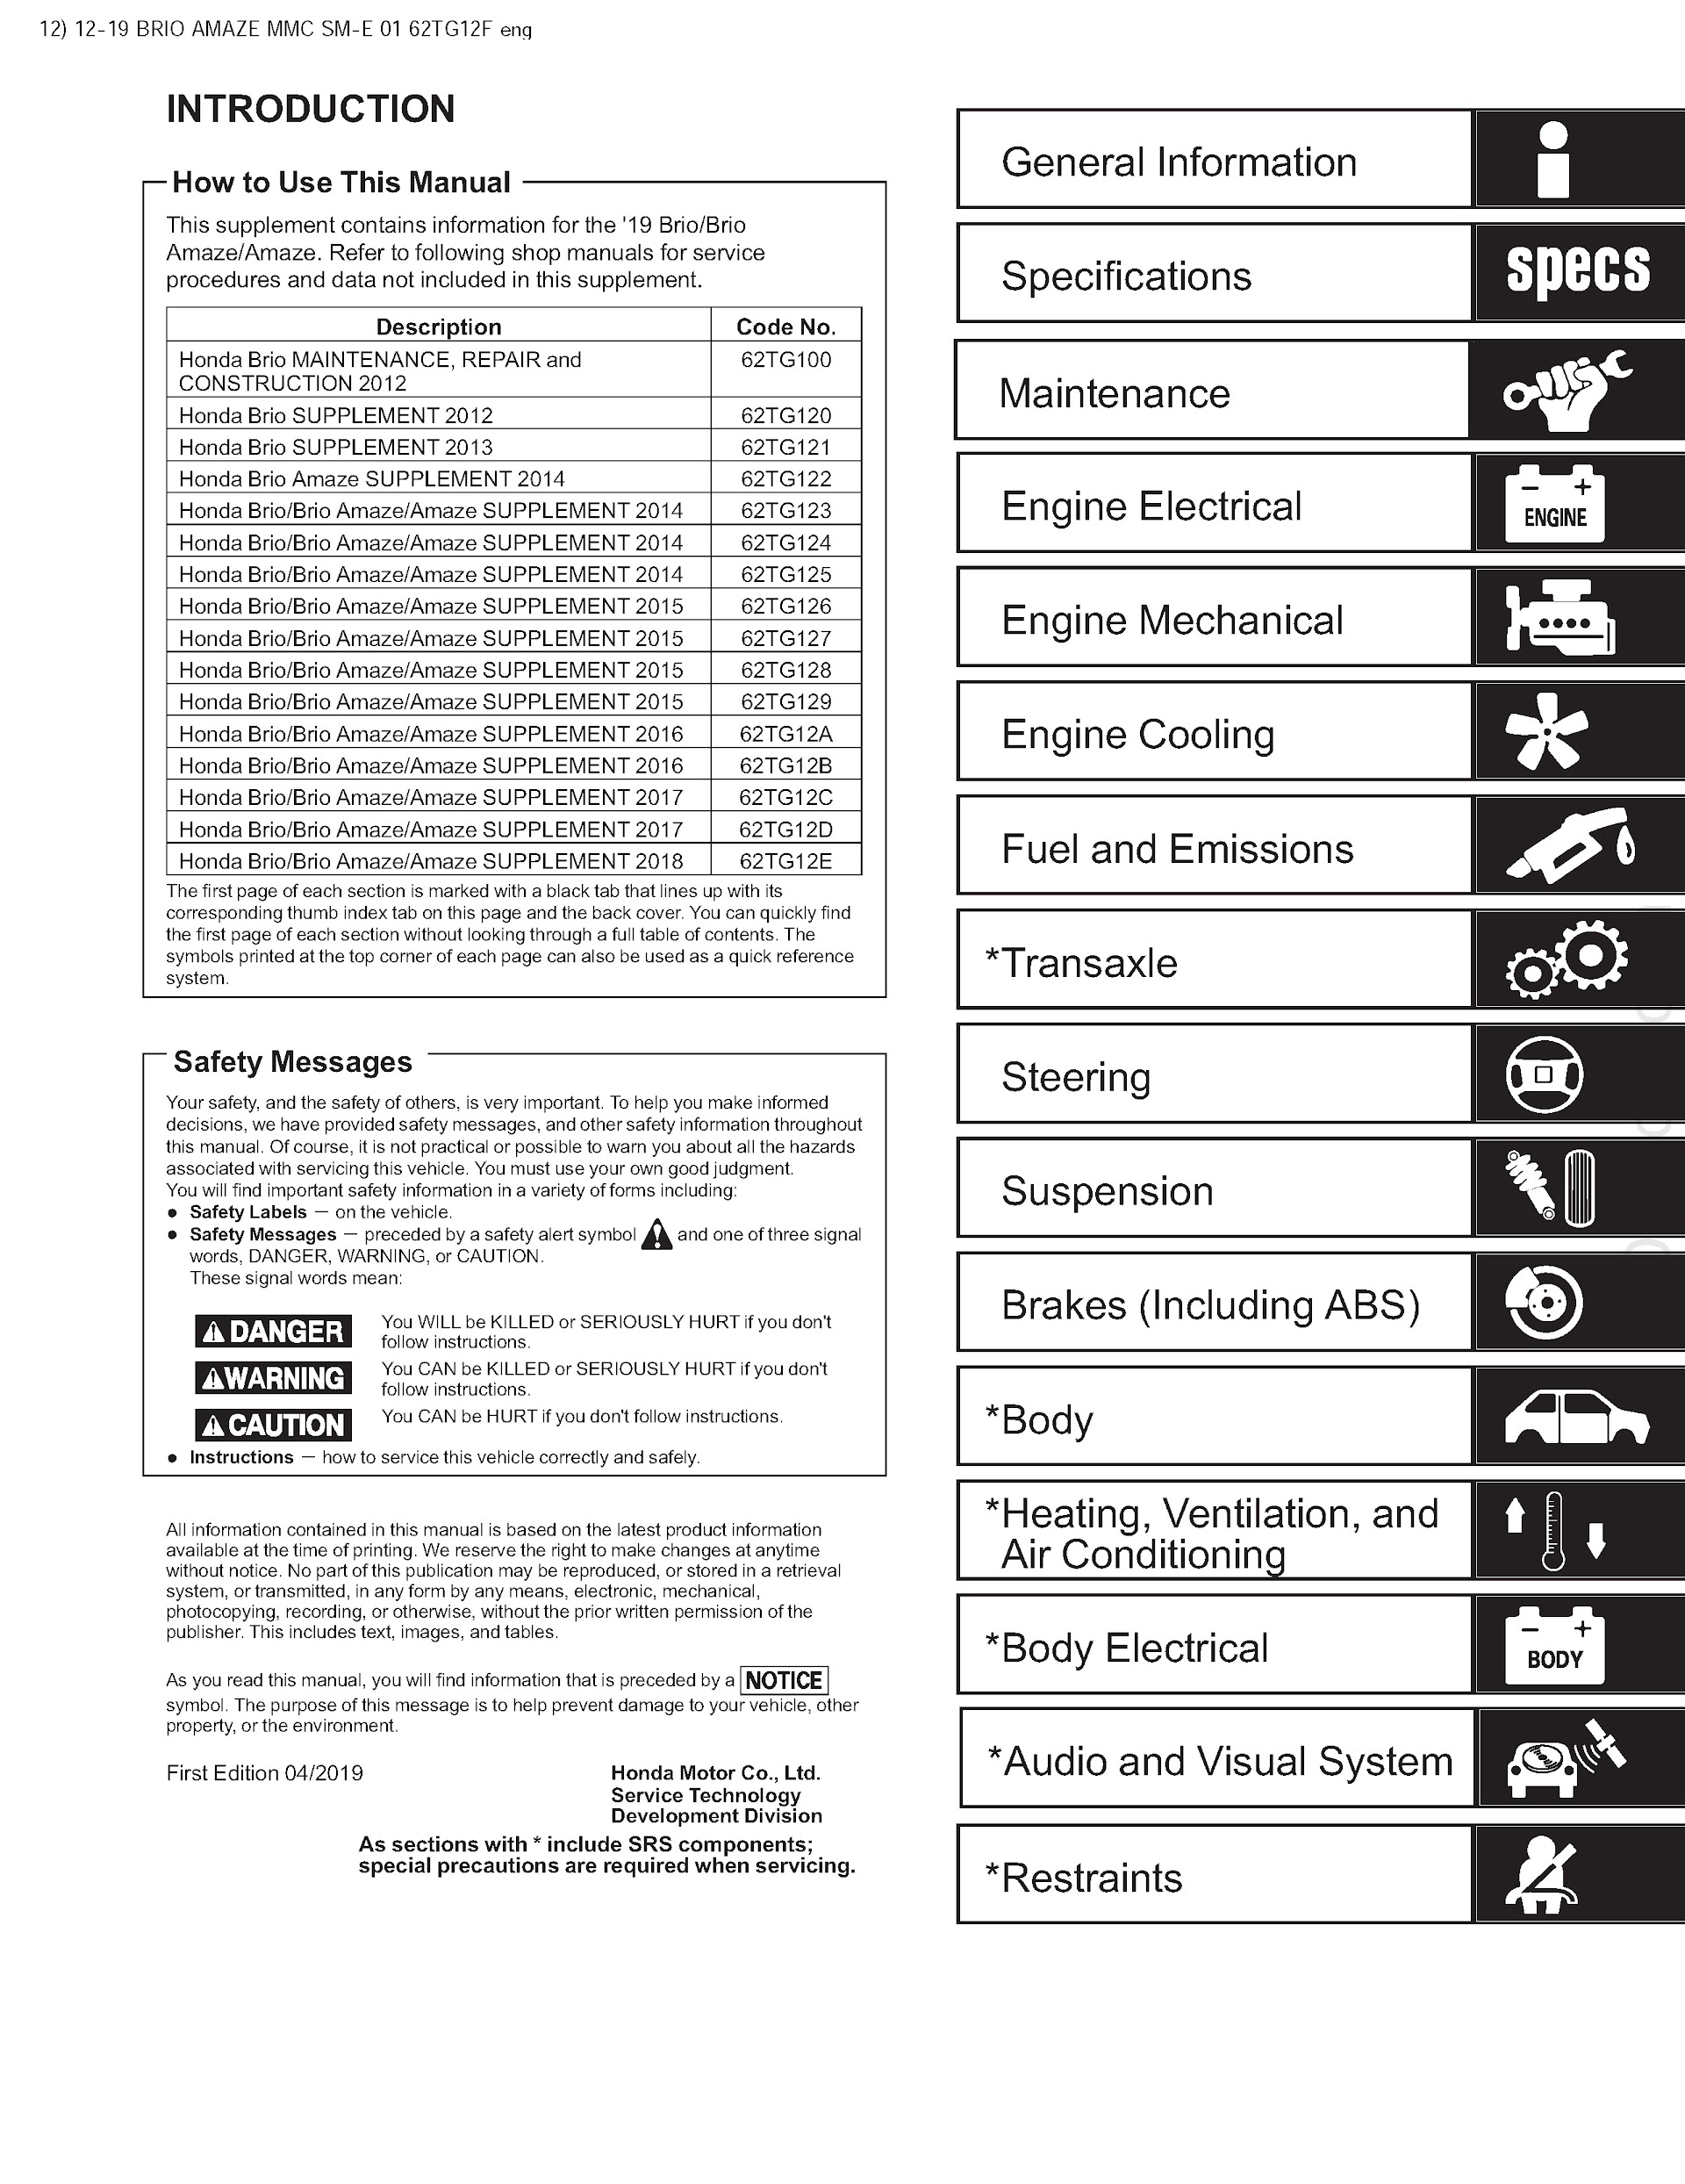 Table of Contents 2012-2020 Honda Brio Repair Manual